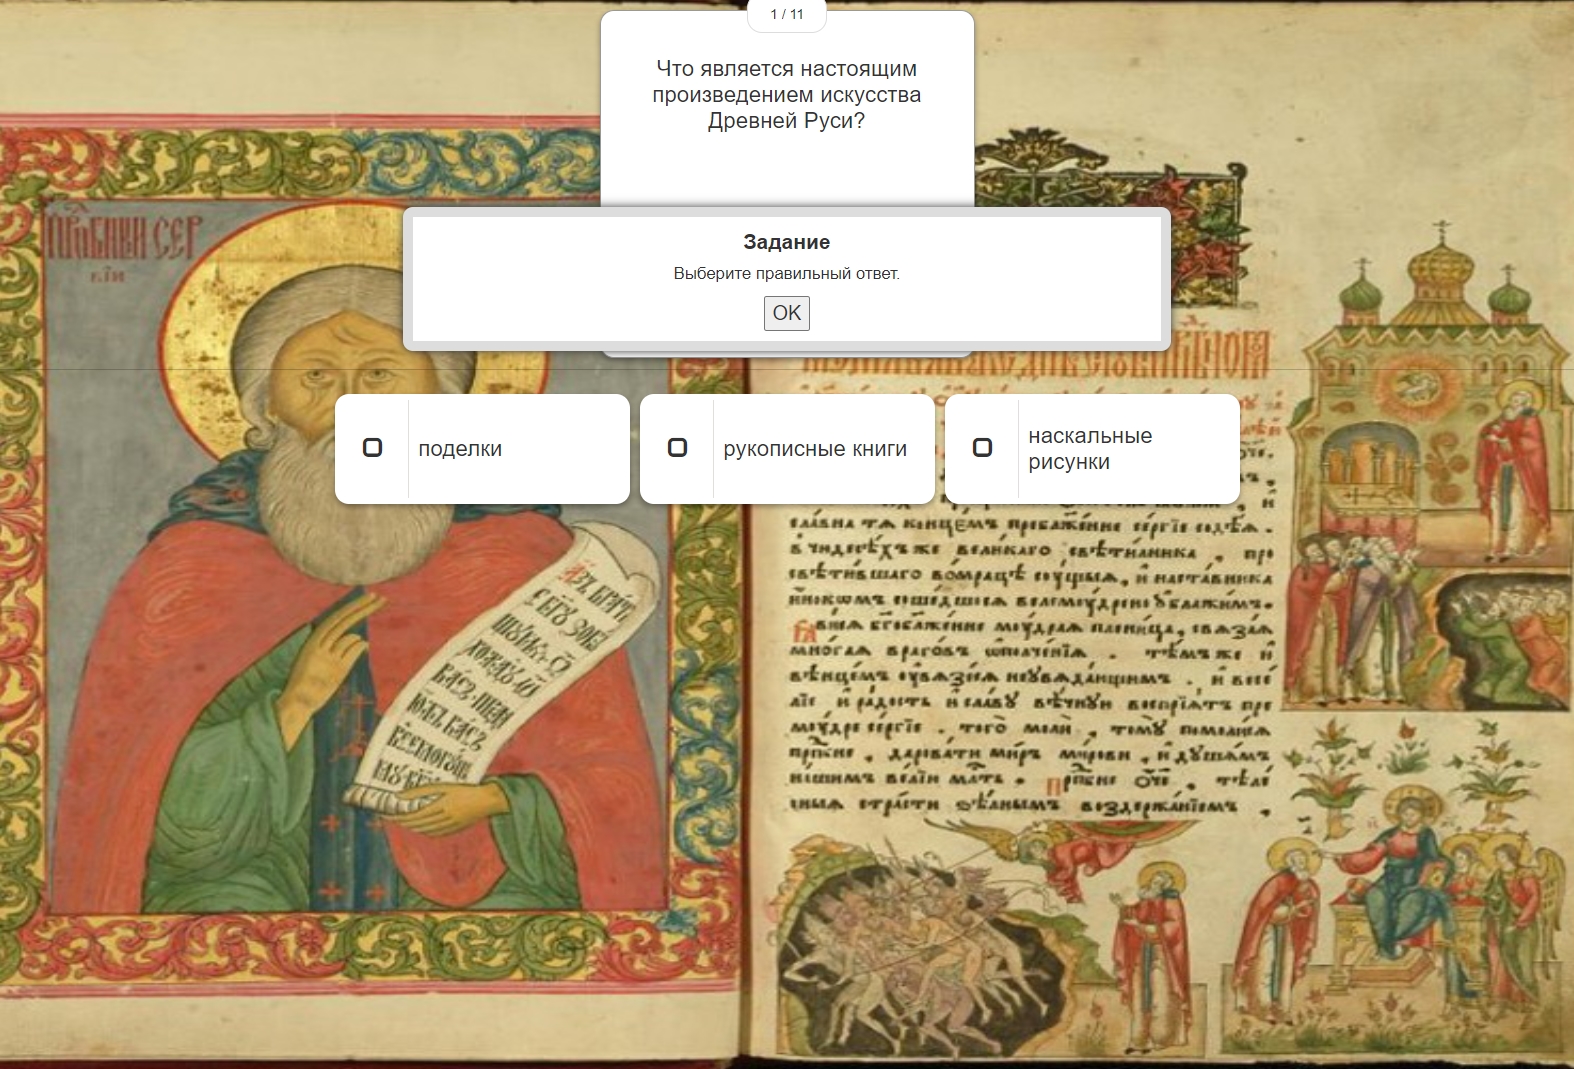 Онлайн-викторина «Рукописные книги Древней Руси»